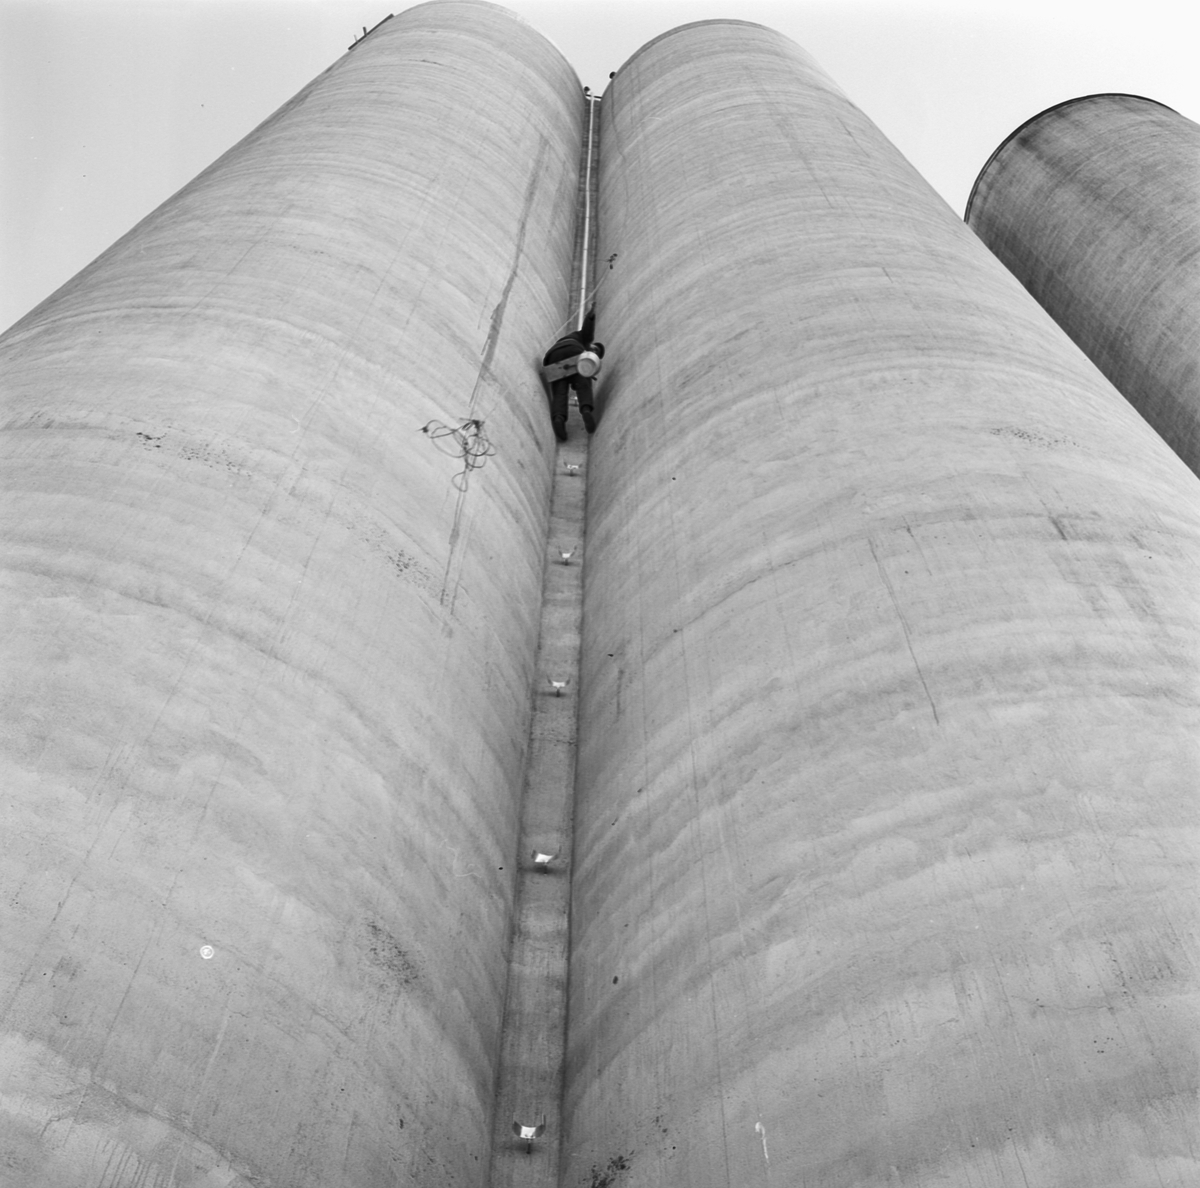 Läggning av tak på silotorn, Nils-Olov Larsson, Uppland 1969